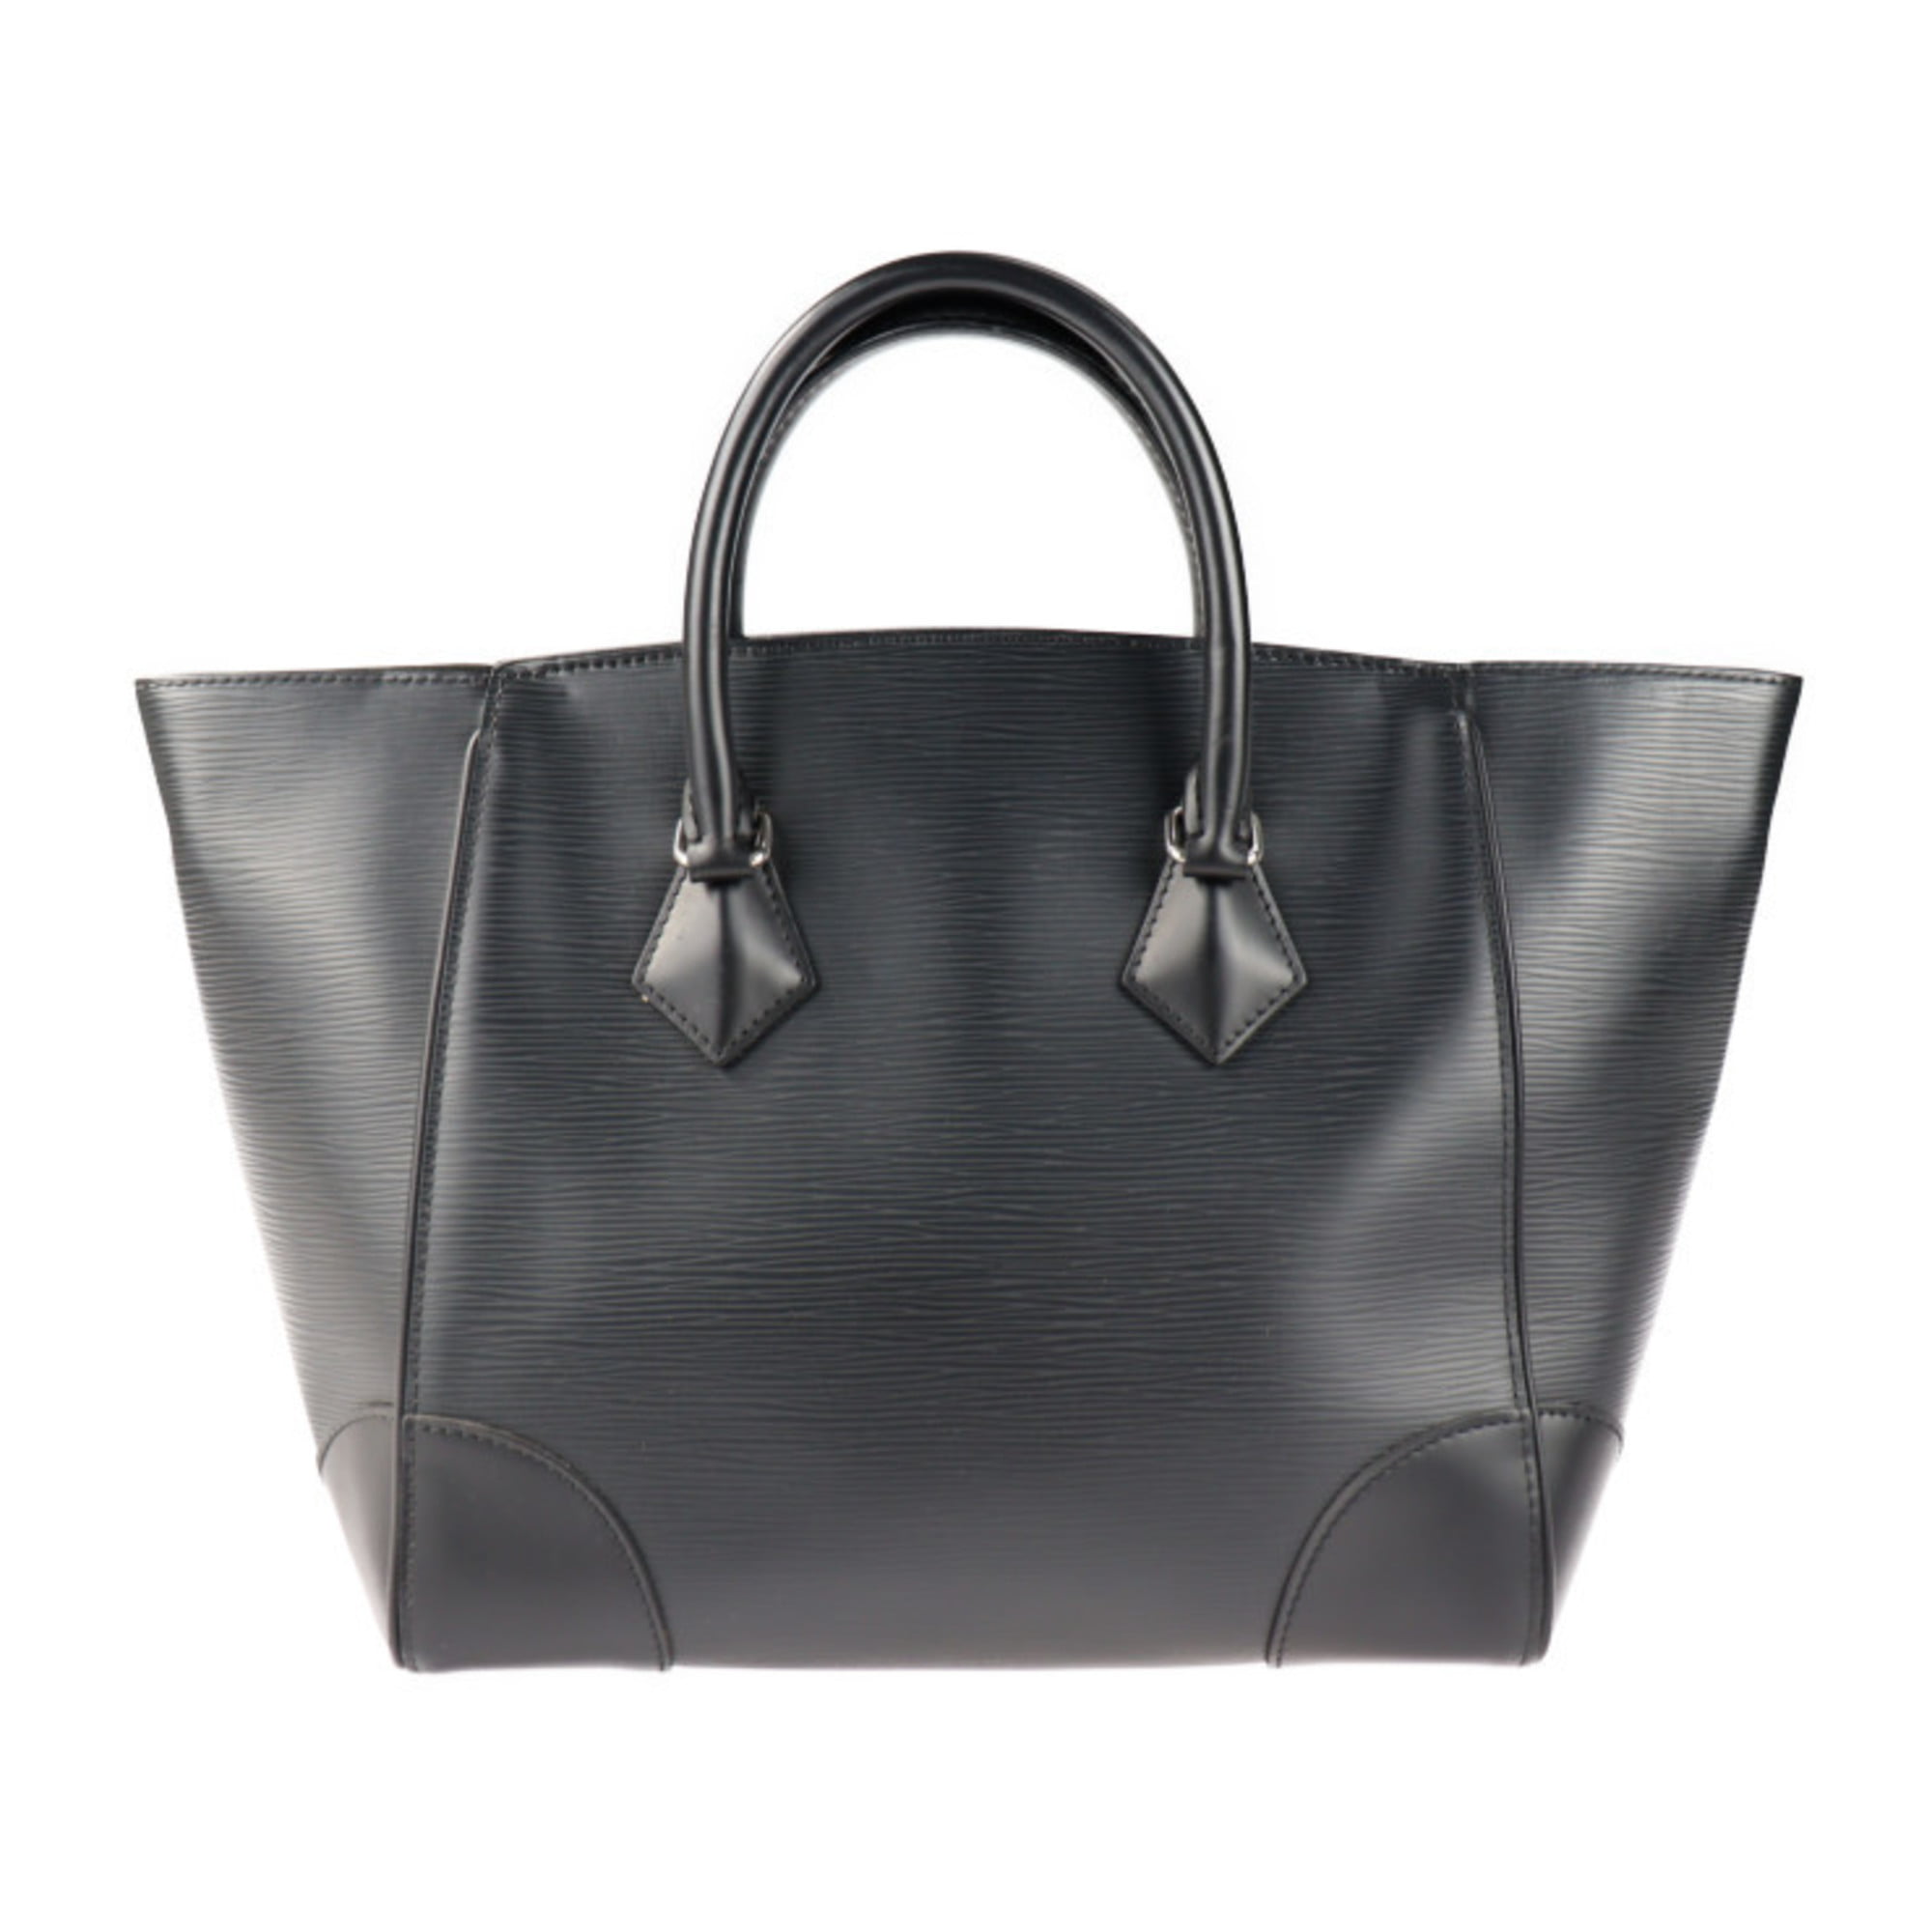 Authenticated Used LOUIS VUITTON Louis Vuitton Phoenix MM Handbag M50590  Epi Leather Noir 2WAY Shoulder Bag Tote